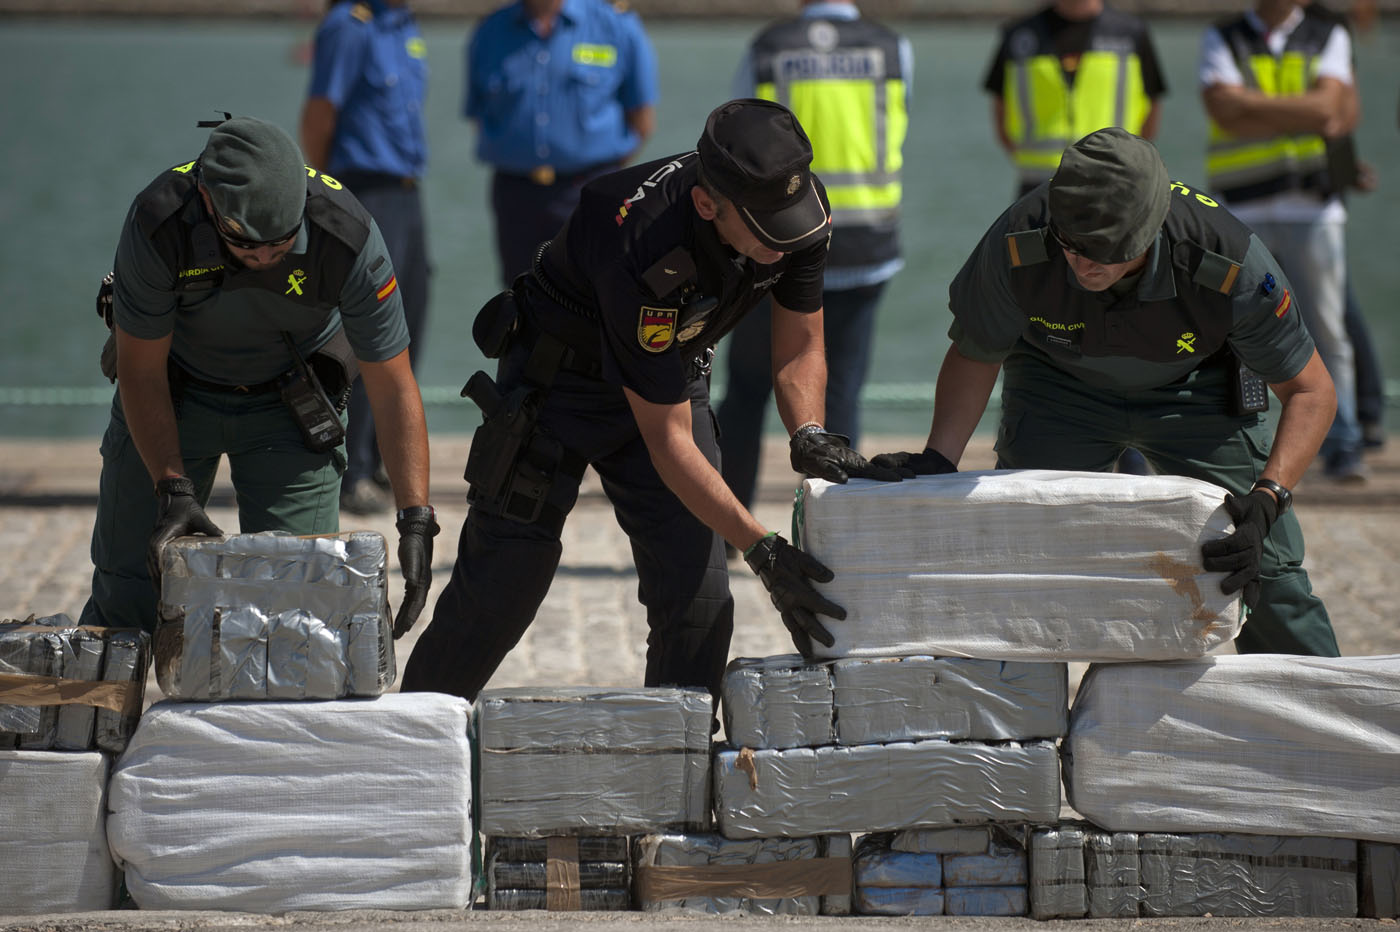 Cae red que introdujo 210 kg de droga en España simulando mudanza